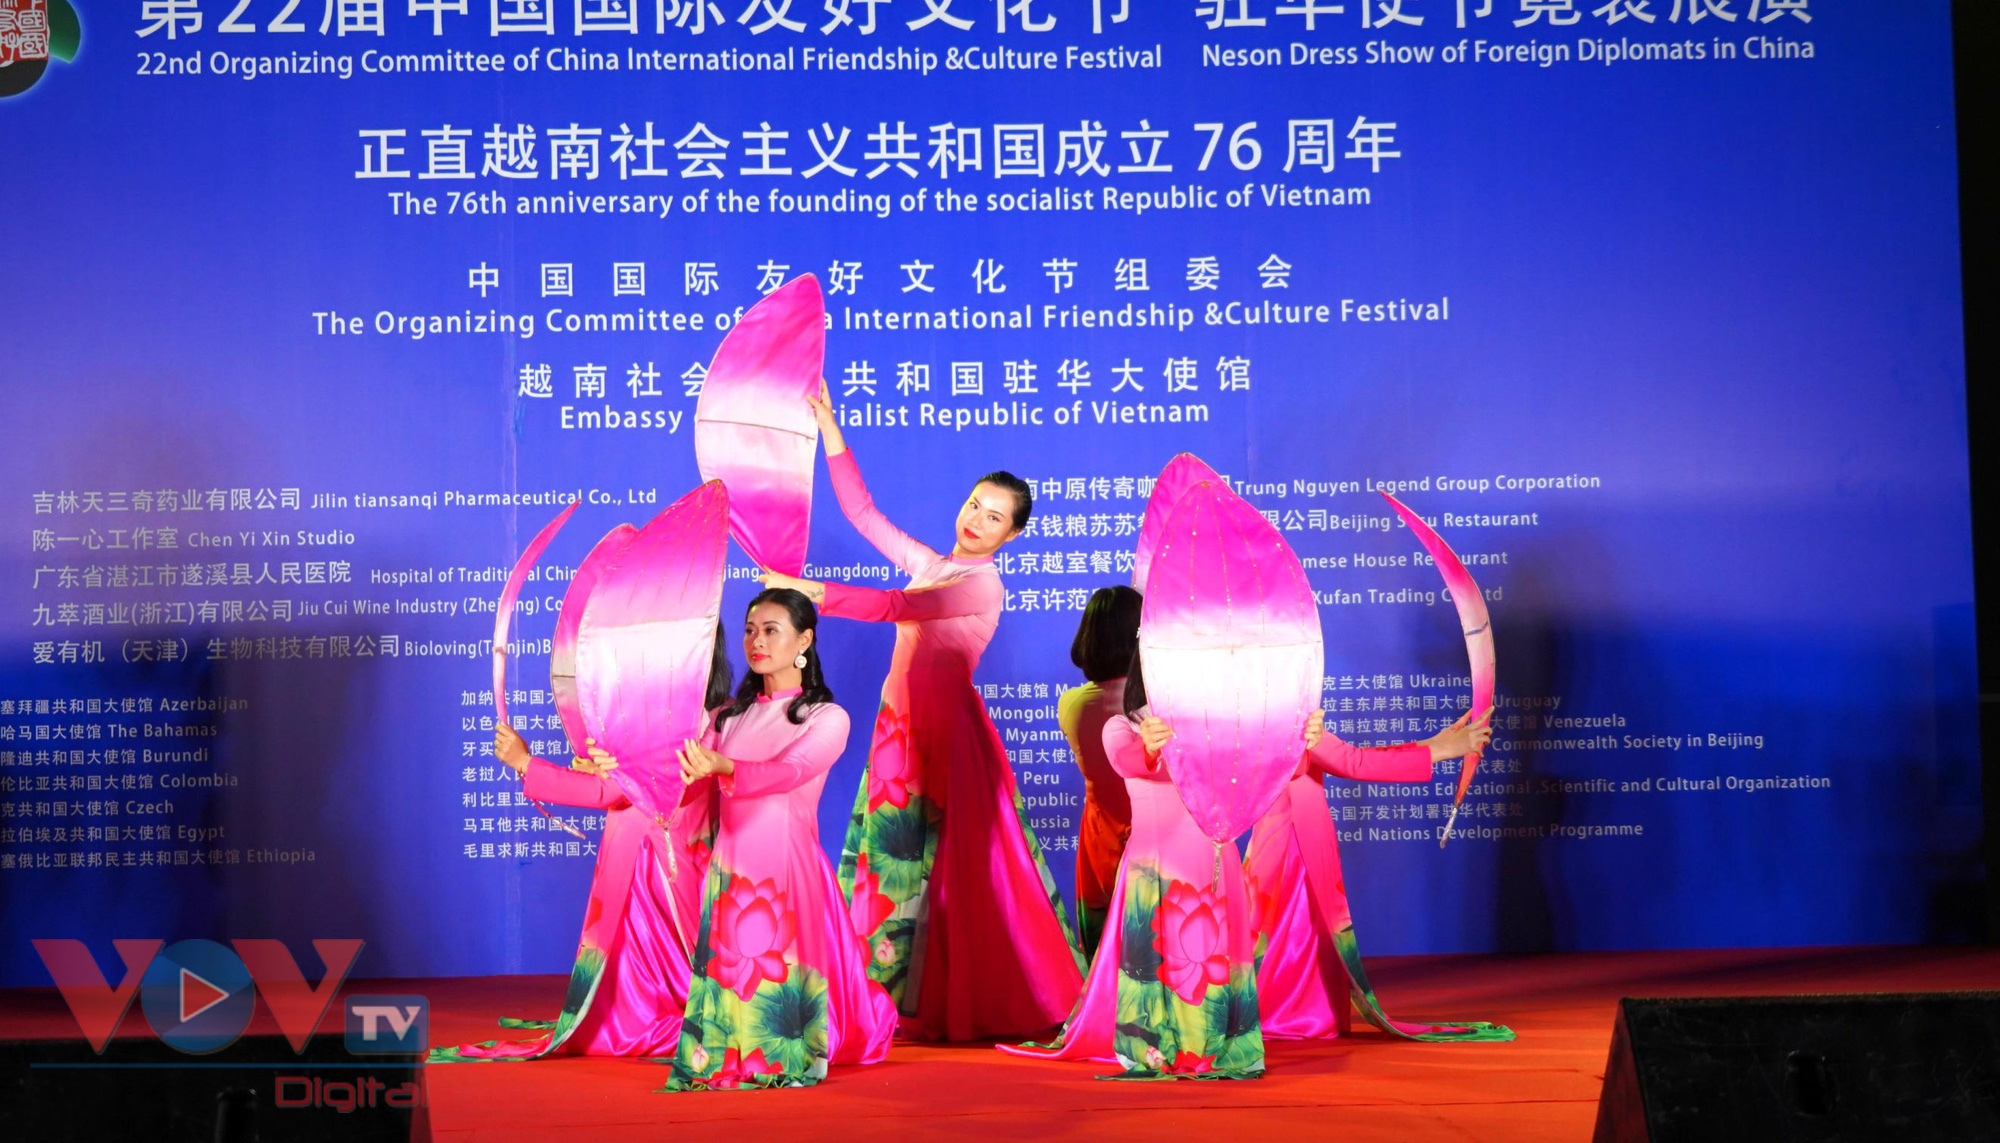 Giao lưu văn hóa nhân dịp Quốc khánh Việt Nam tại Trung Quốc - Ảnh 7.